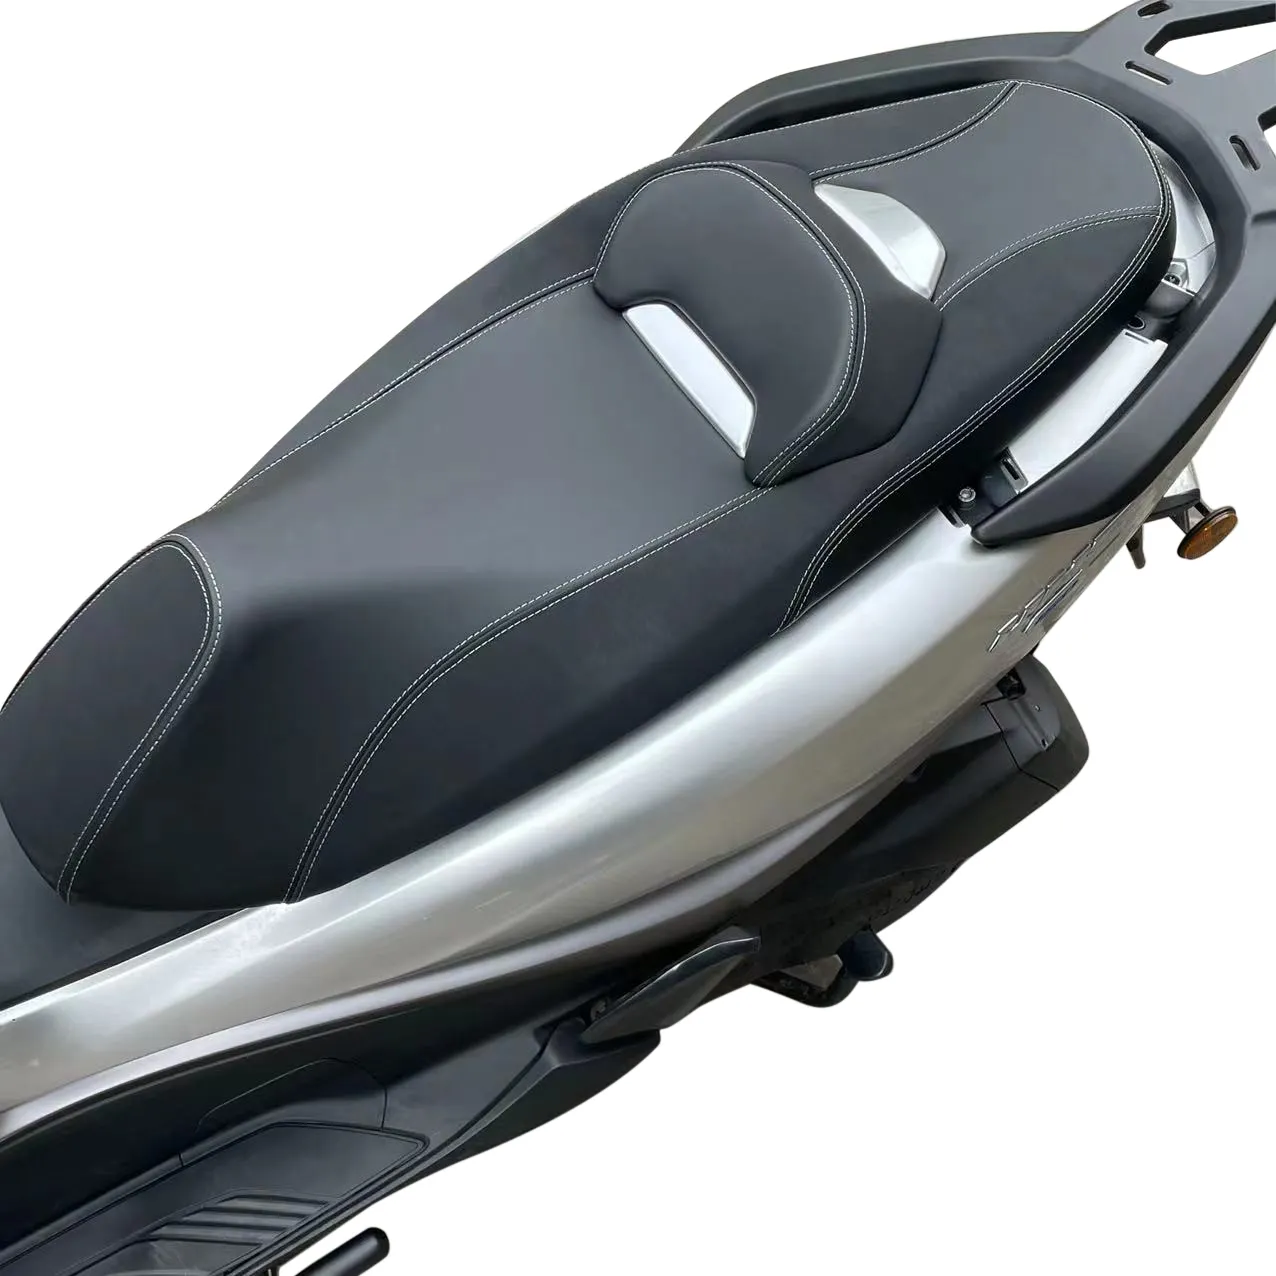 Pieza de repuesto modificada para motocicleta DNA Motors, cojín de asiento uhr125, uhr sears, haojue uhr150